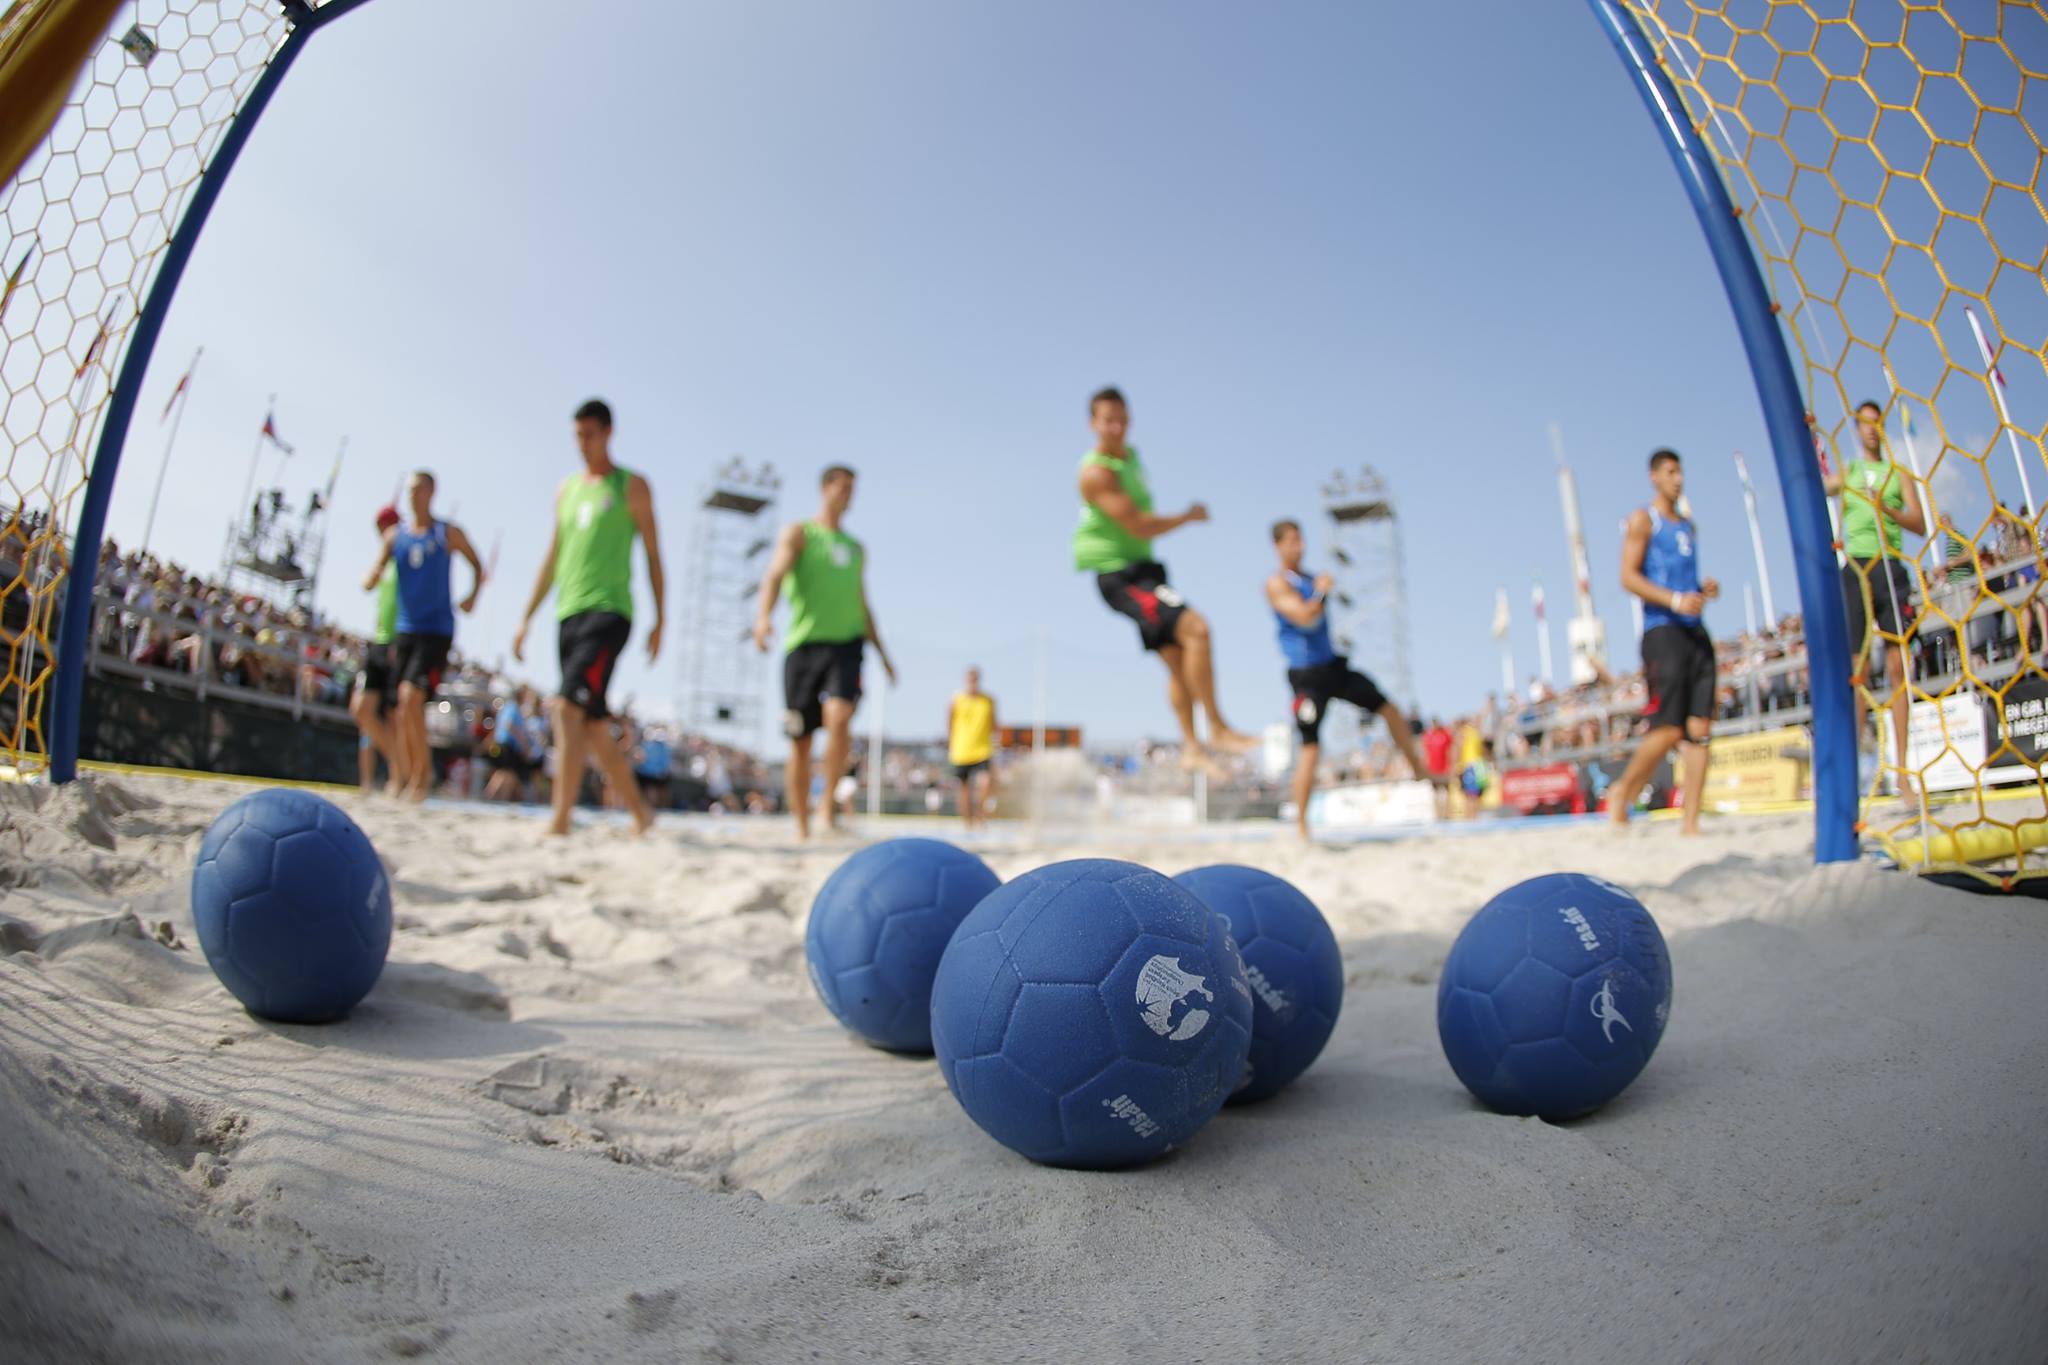 http://www.federhandball.it/images/wp-content/uploads/2015/06/beach_handball.jpg